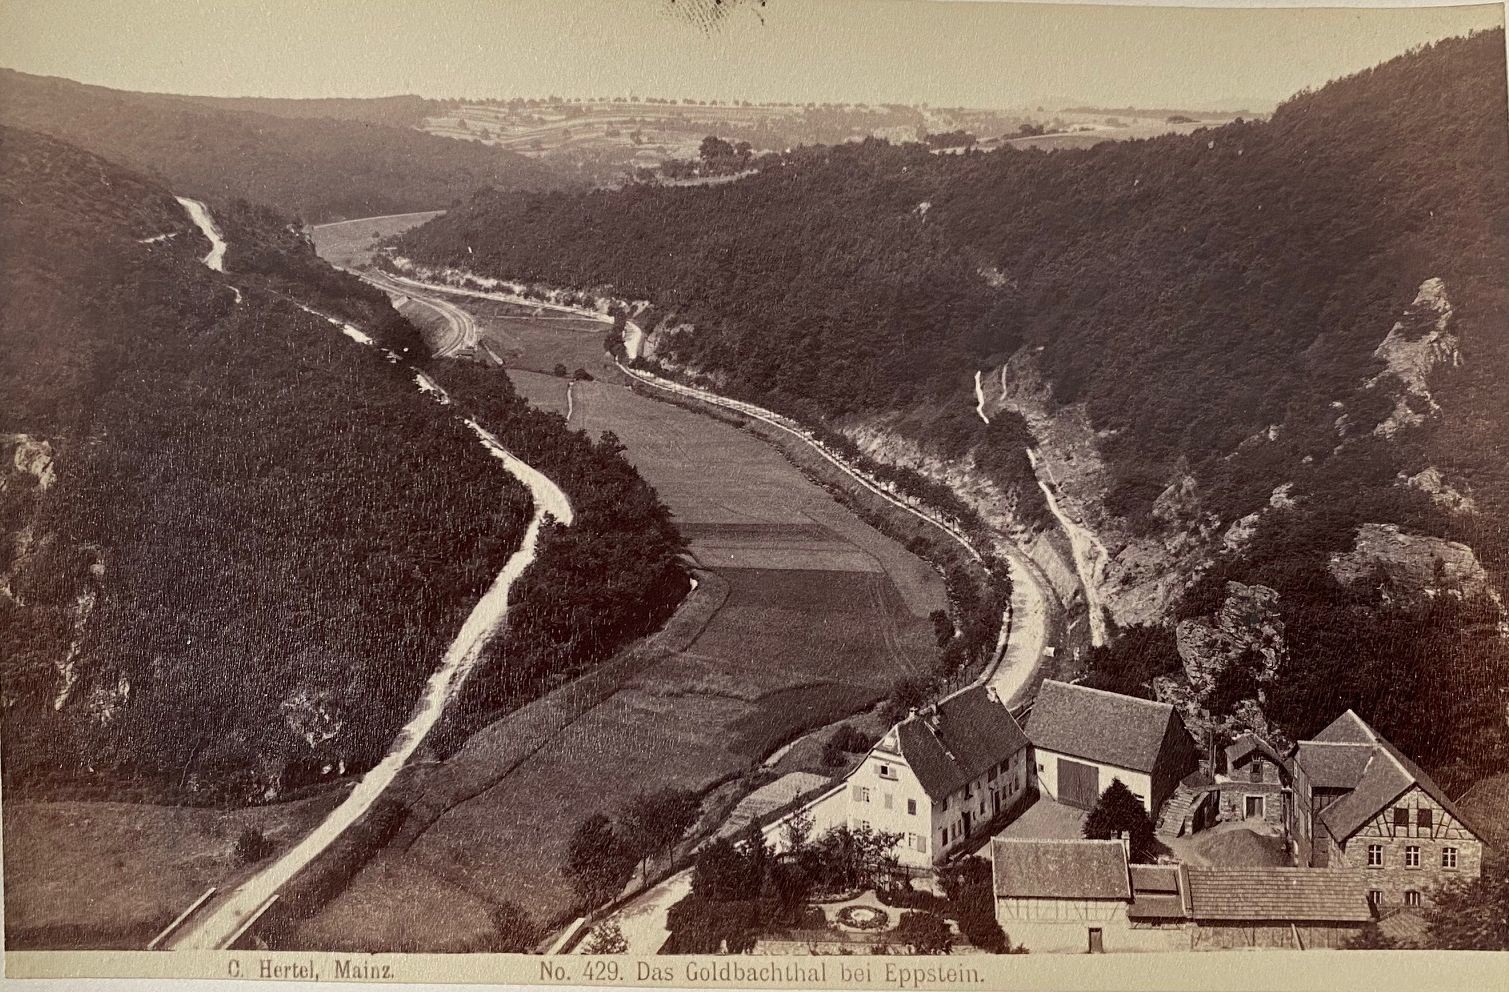 Fotografie, Carl Hertel No. 429, Das Goldbachthal bei Eppstein, ca. 1885 (Taunus-Rhein-Main - Regionalgeschichtliche Sammlung Dr. Stefan Naas CC BY-NC-SA)